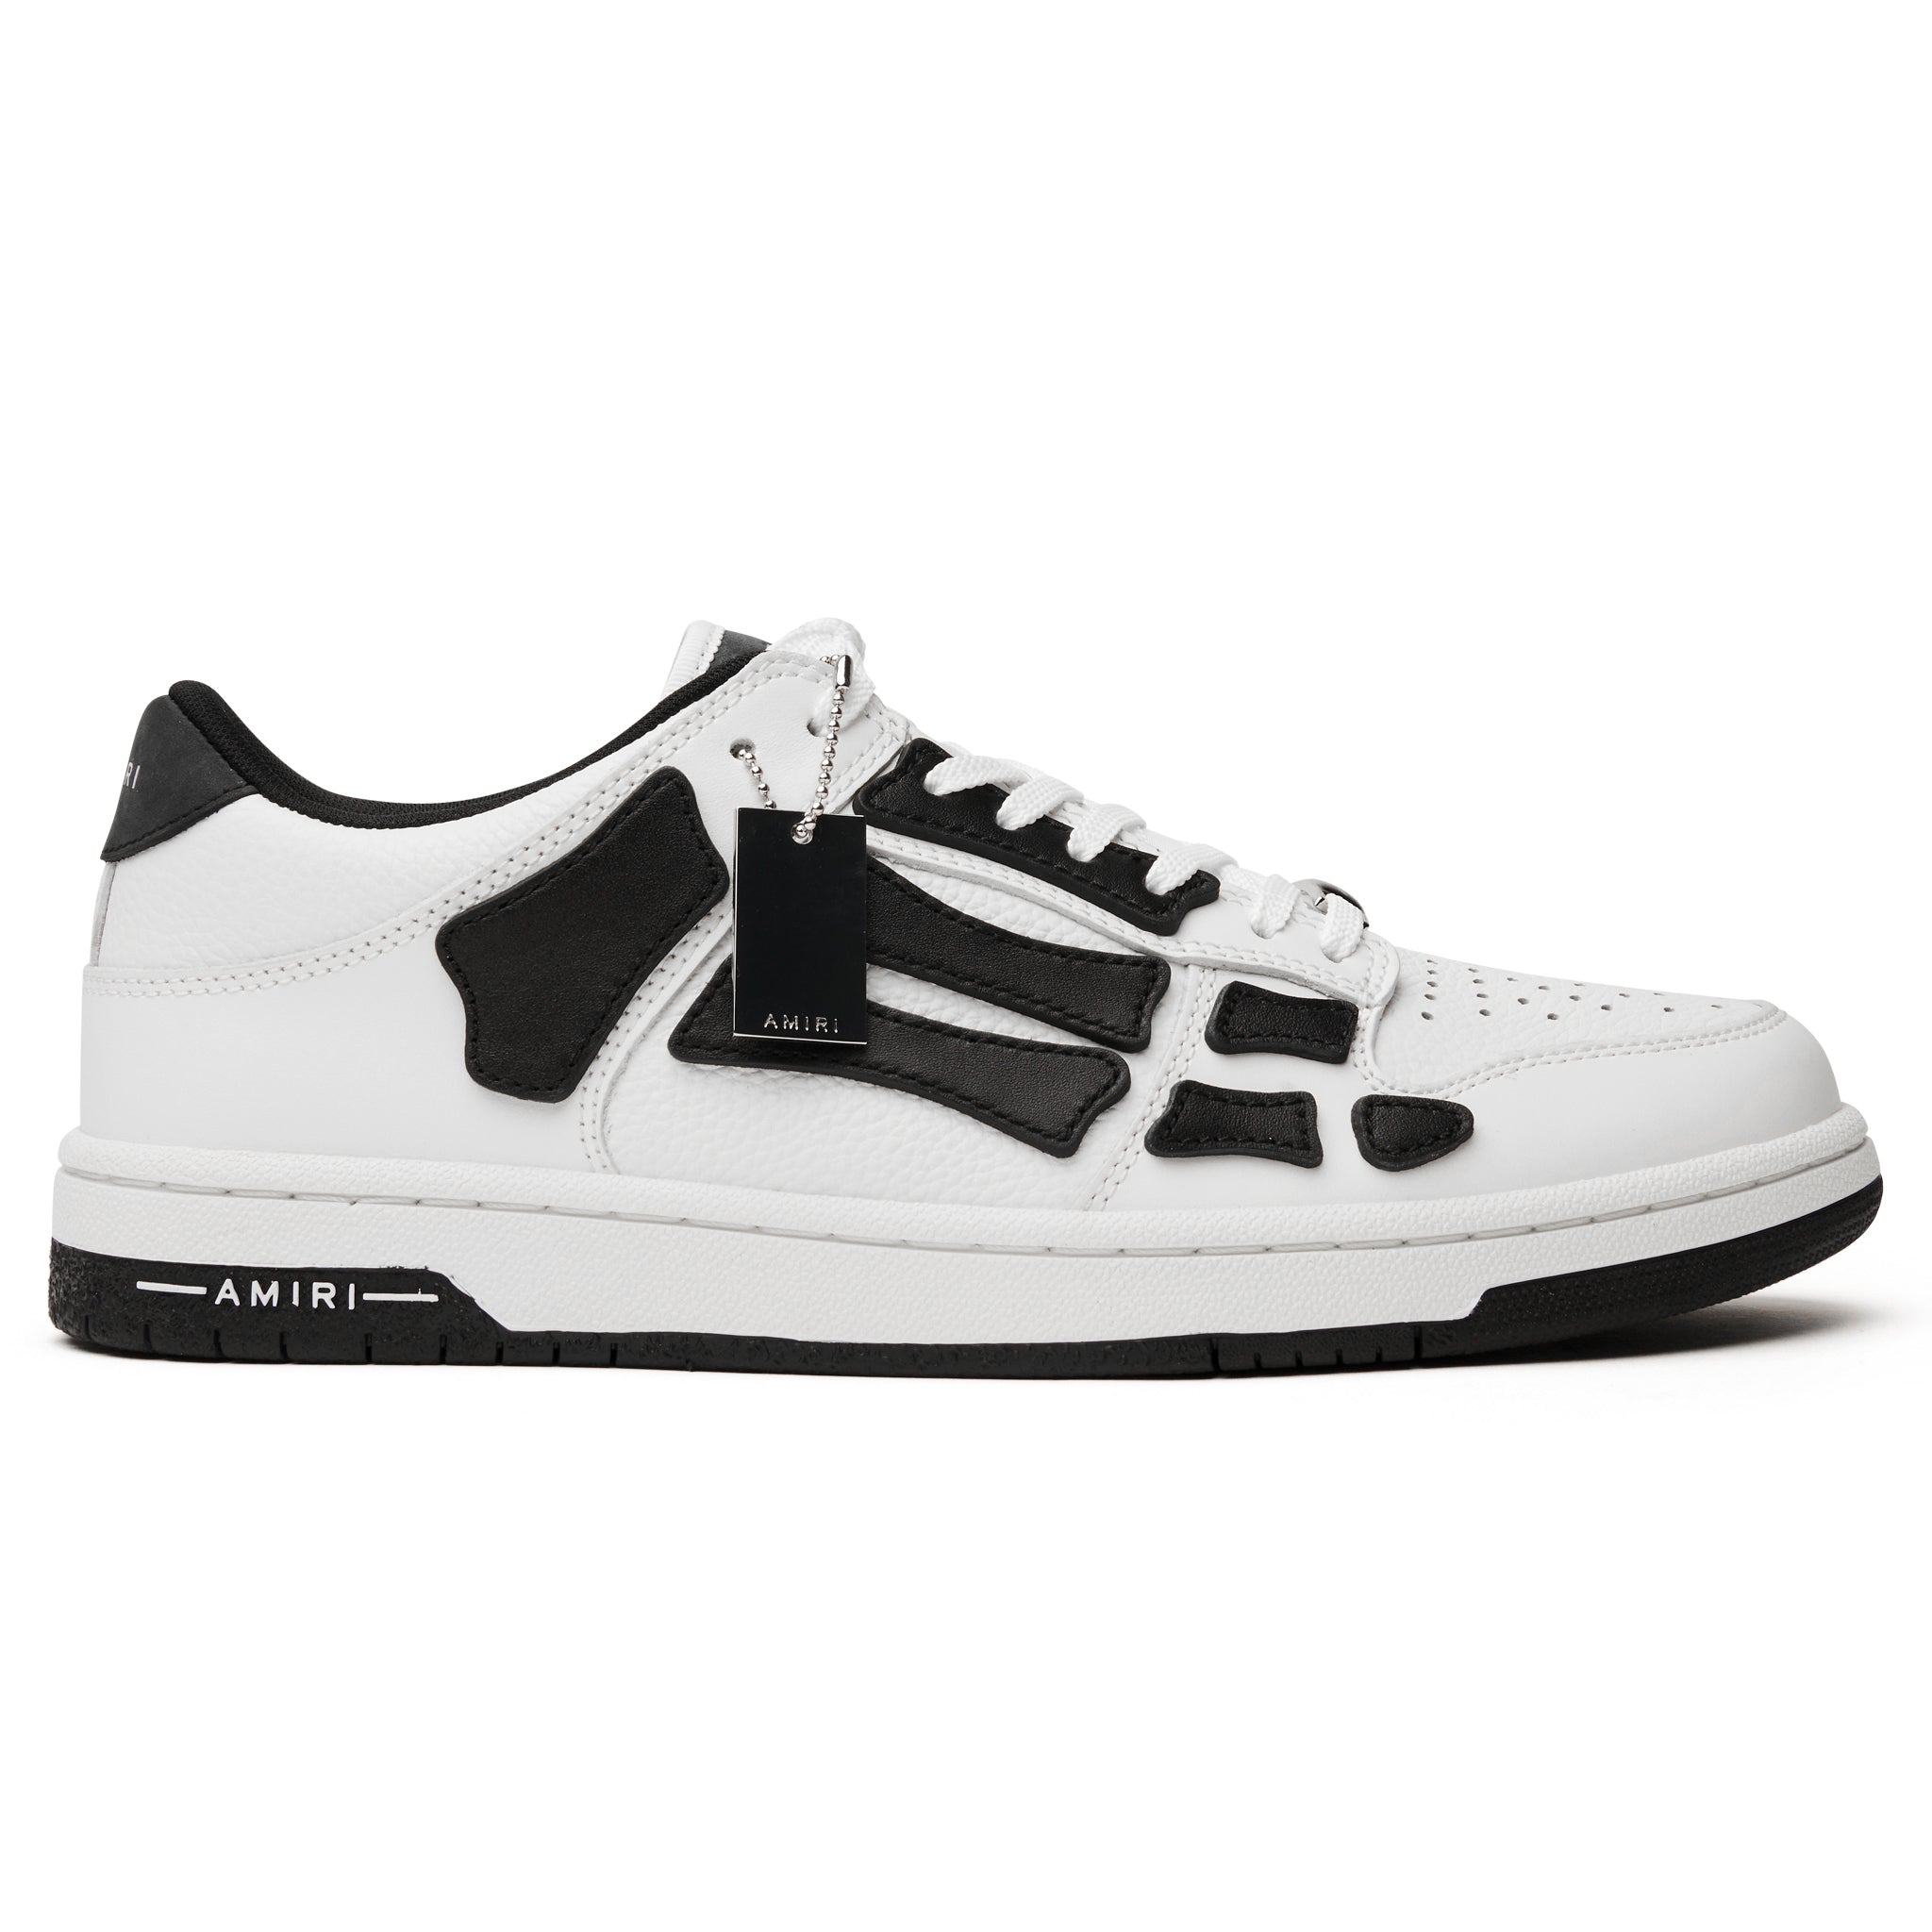 Amiri Skeleton Low White Black Sneaker – Crepslocker